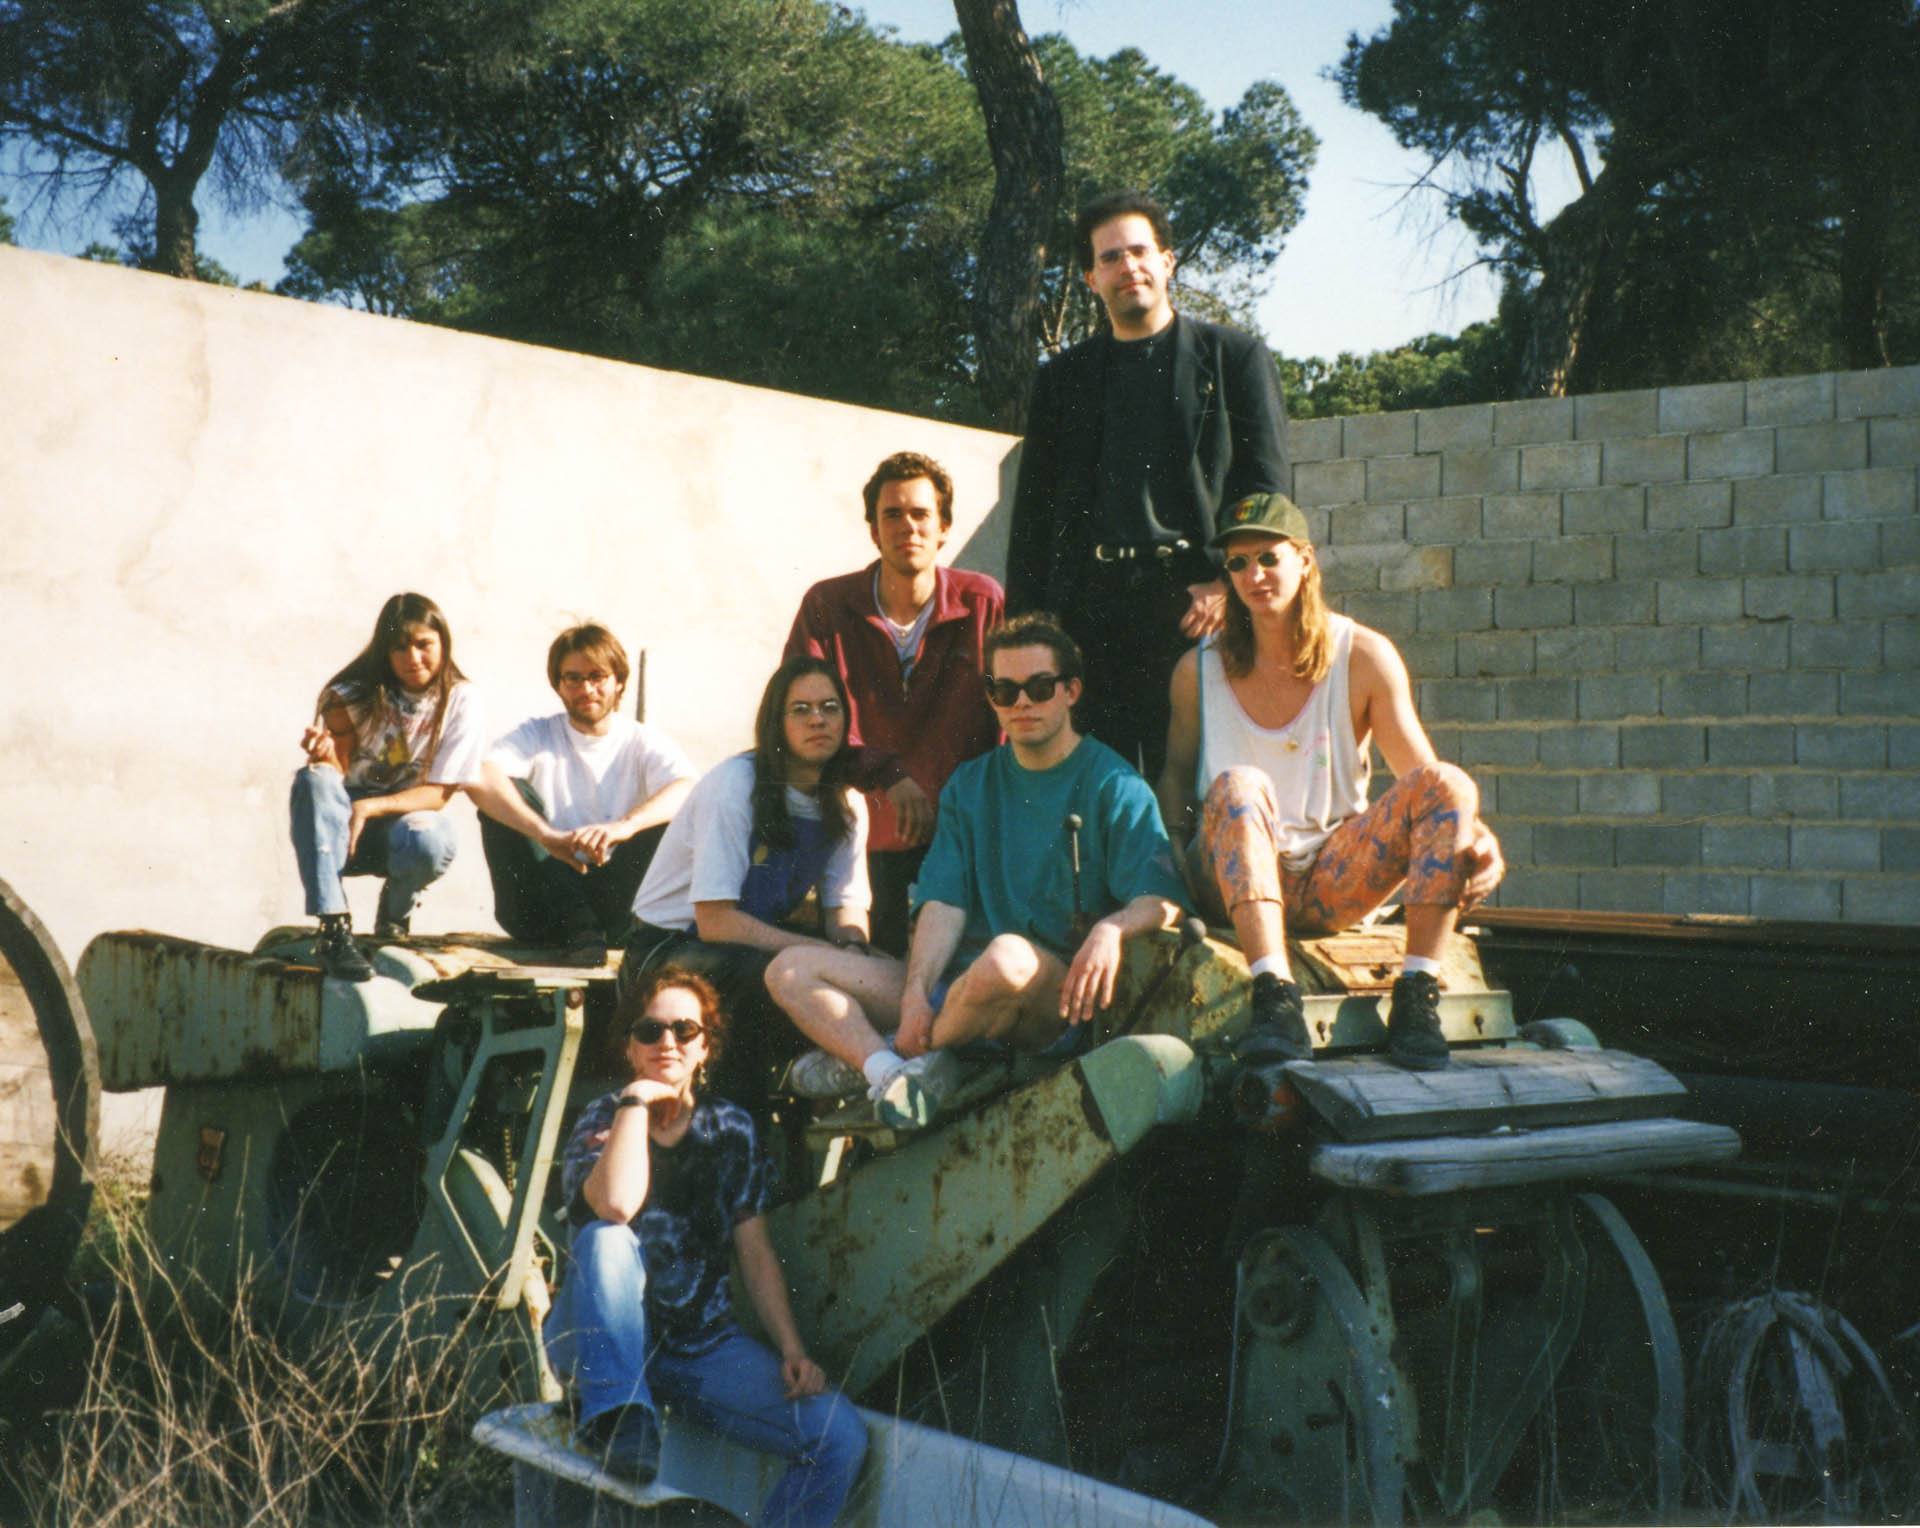 1994, Valladolid, Spanien